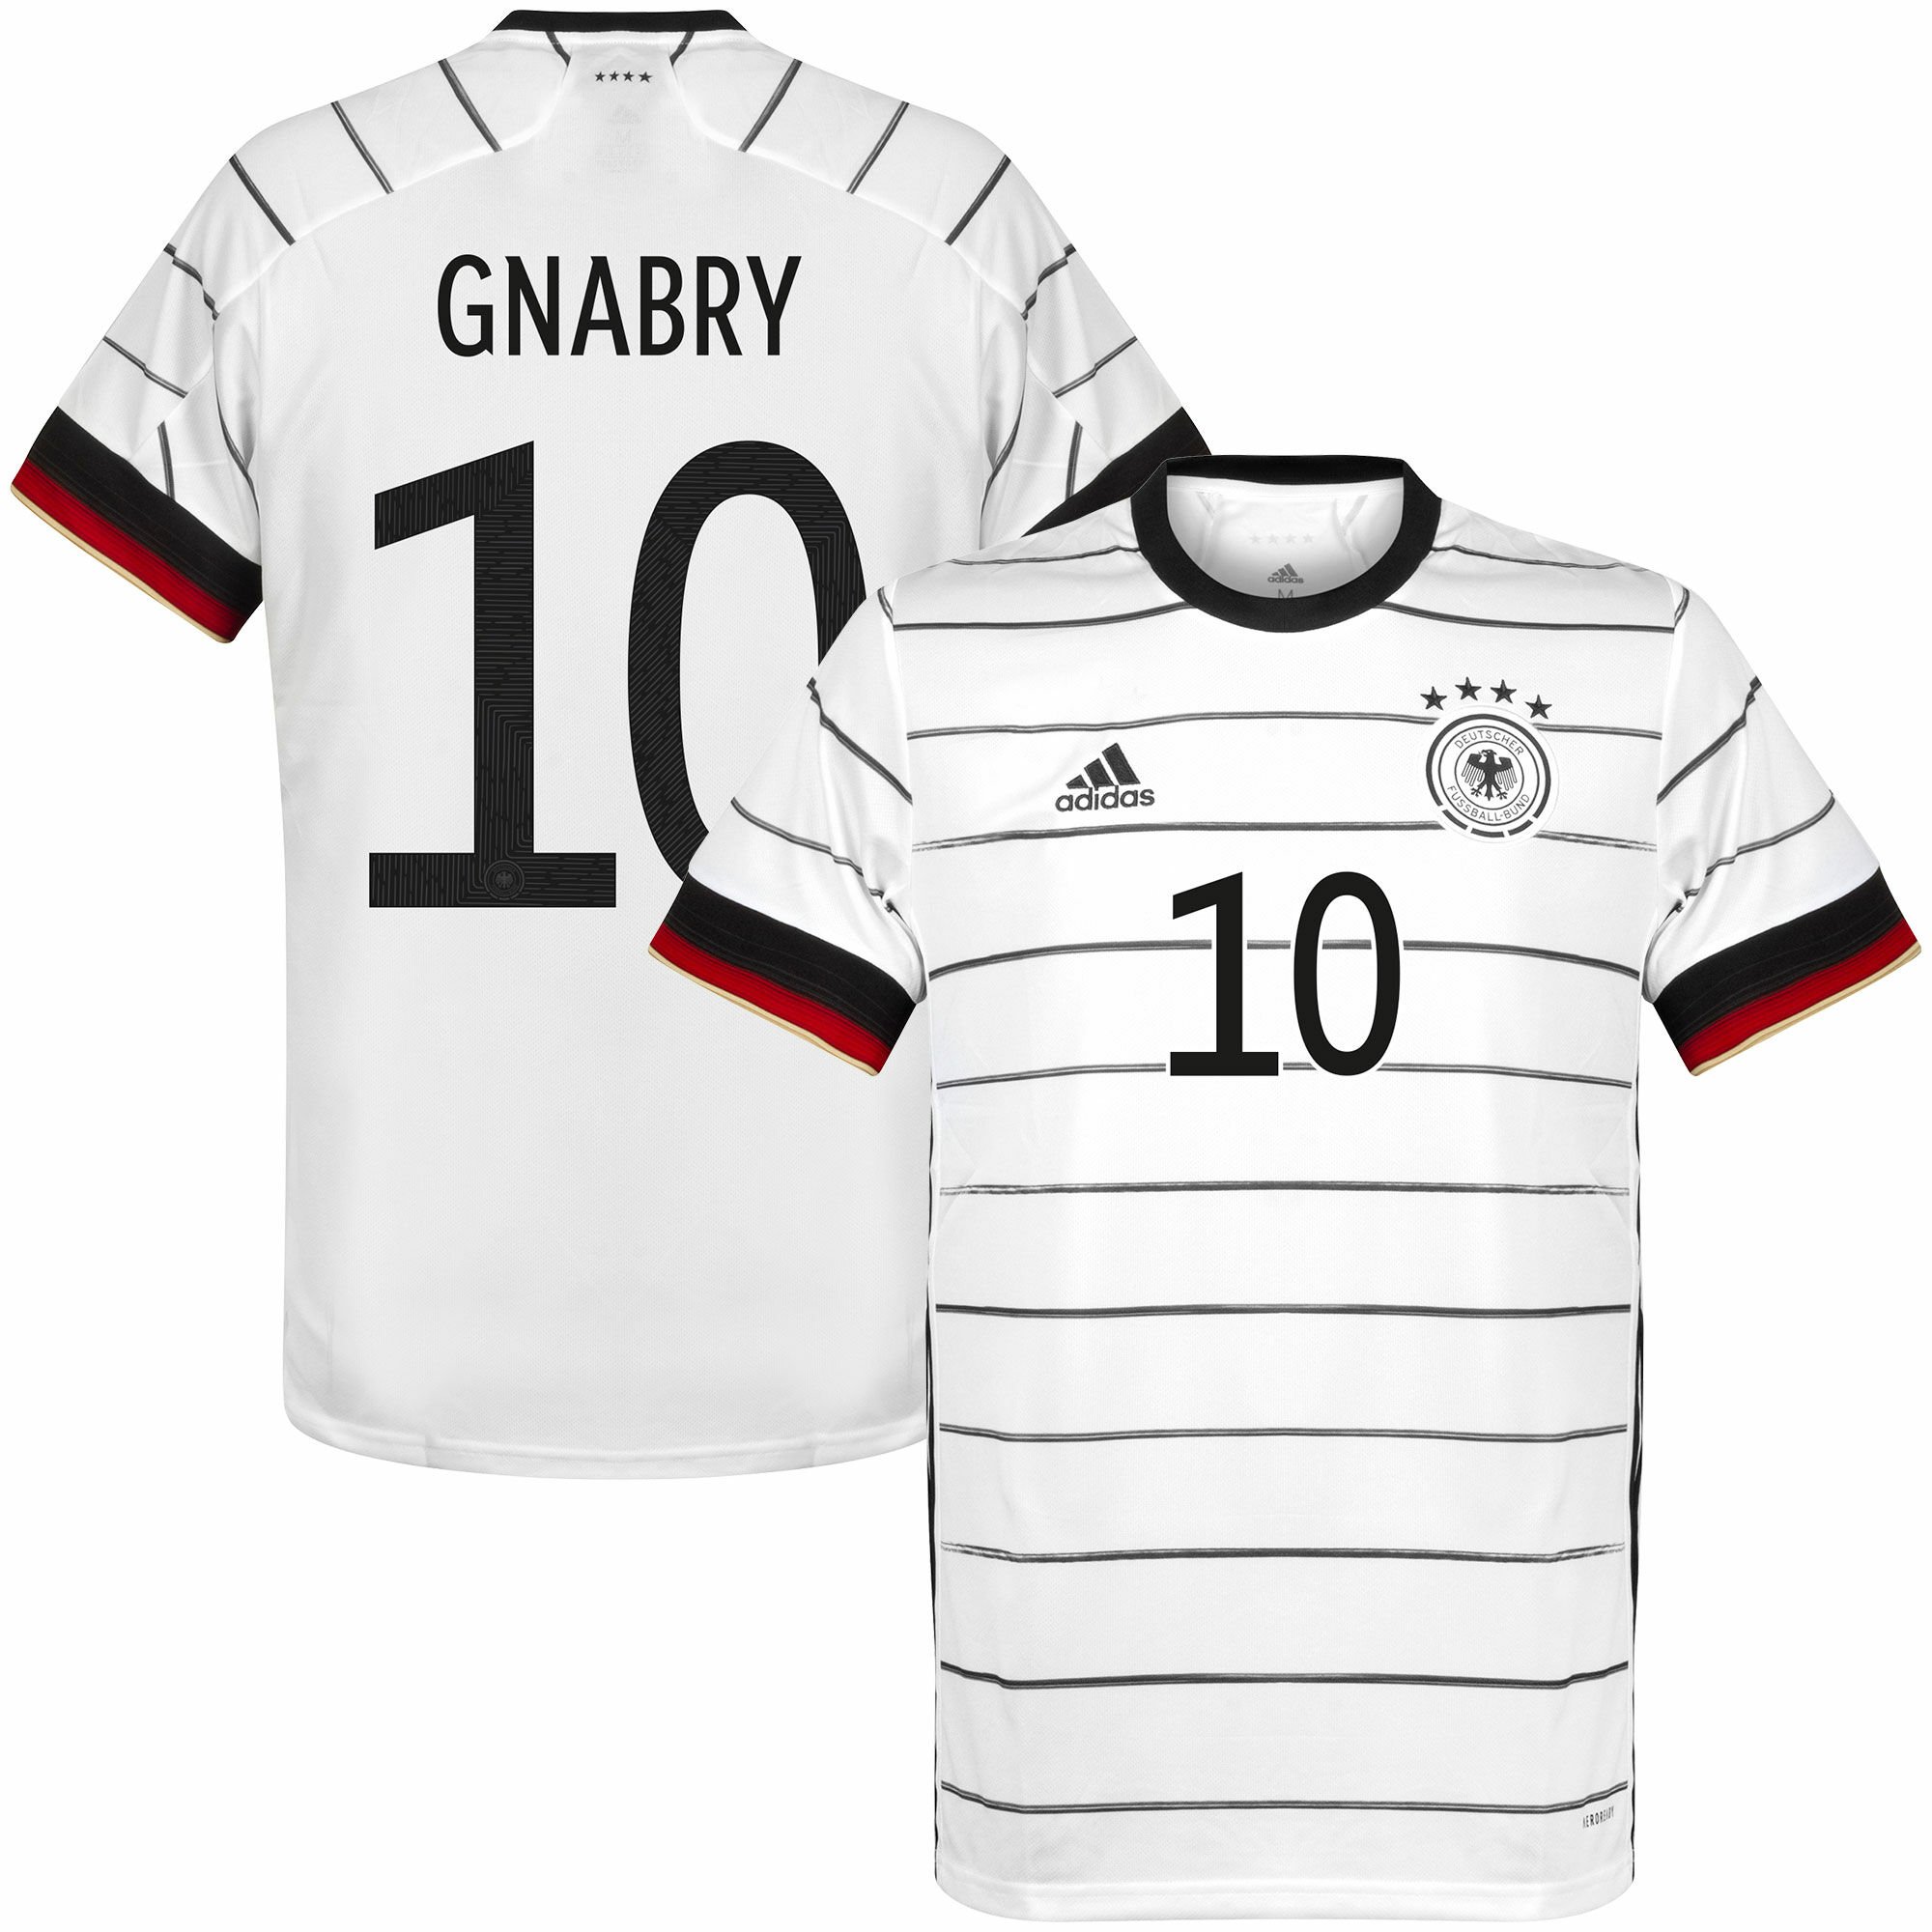 Německo - Dres fotbalový - bílý, oficiální potisk, sezóna 2020/21, číslo 10, domácí, Serge Gnabry